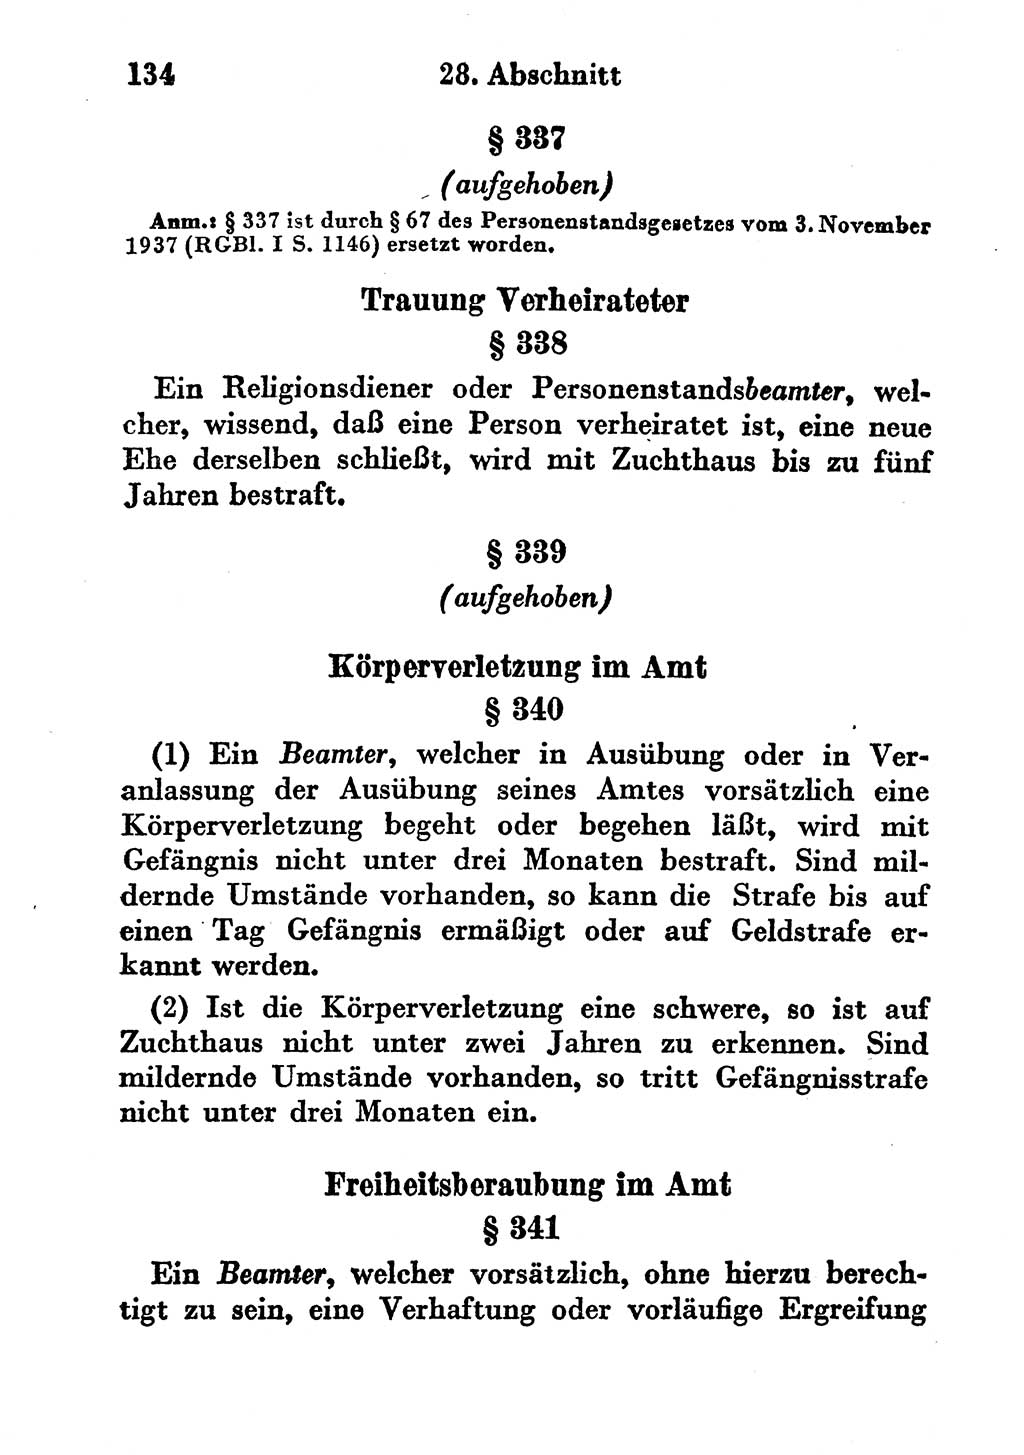 Strafgesetzbuch (StGB) und andere Strafgesetze [Deutsche Demokratische Republik (DDR)] 1956, Seite 134 (StGB Strafges. DDR 1956, S. 134)